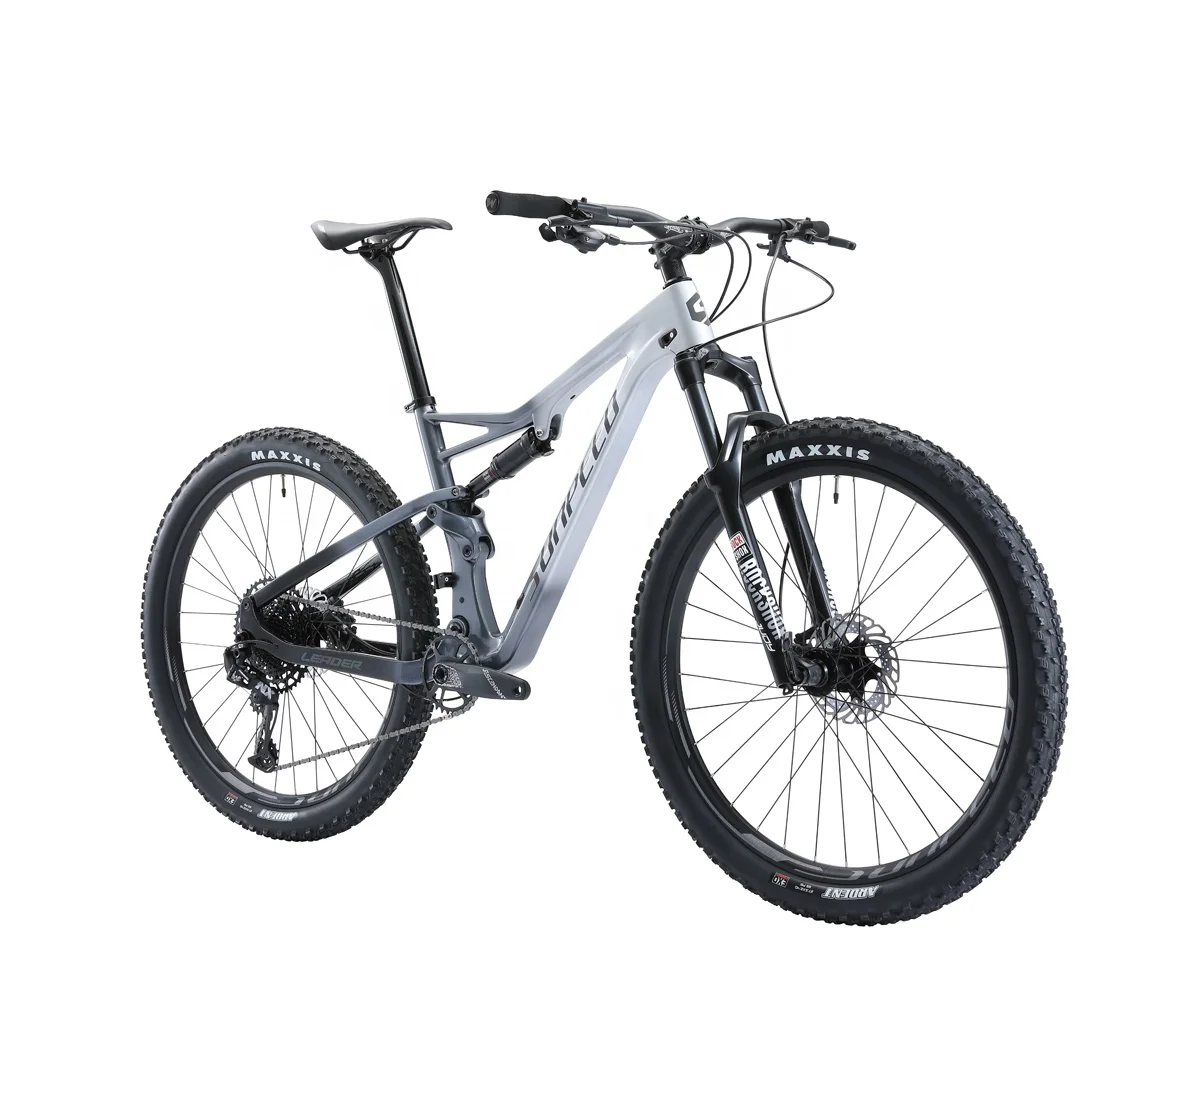 

SUNPEED CE certificated 27.5/29 inch carbon fiber 12 speeds bicicletas mountain bike